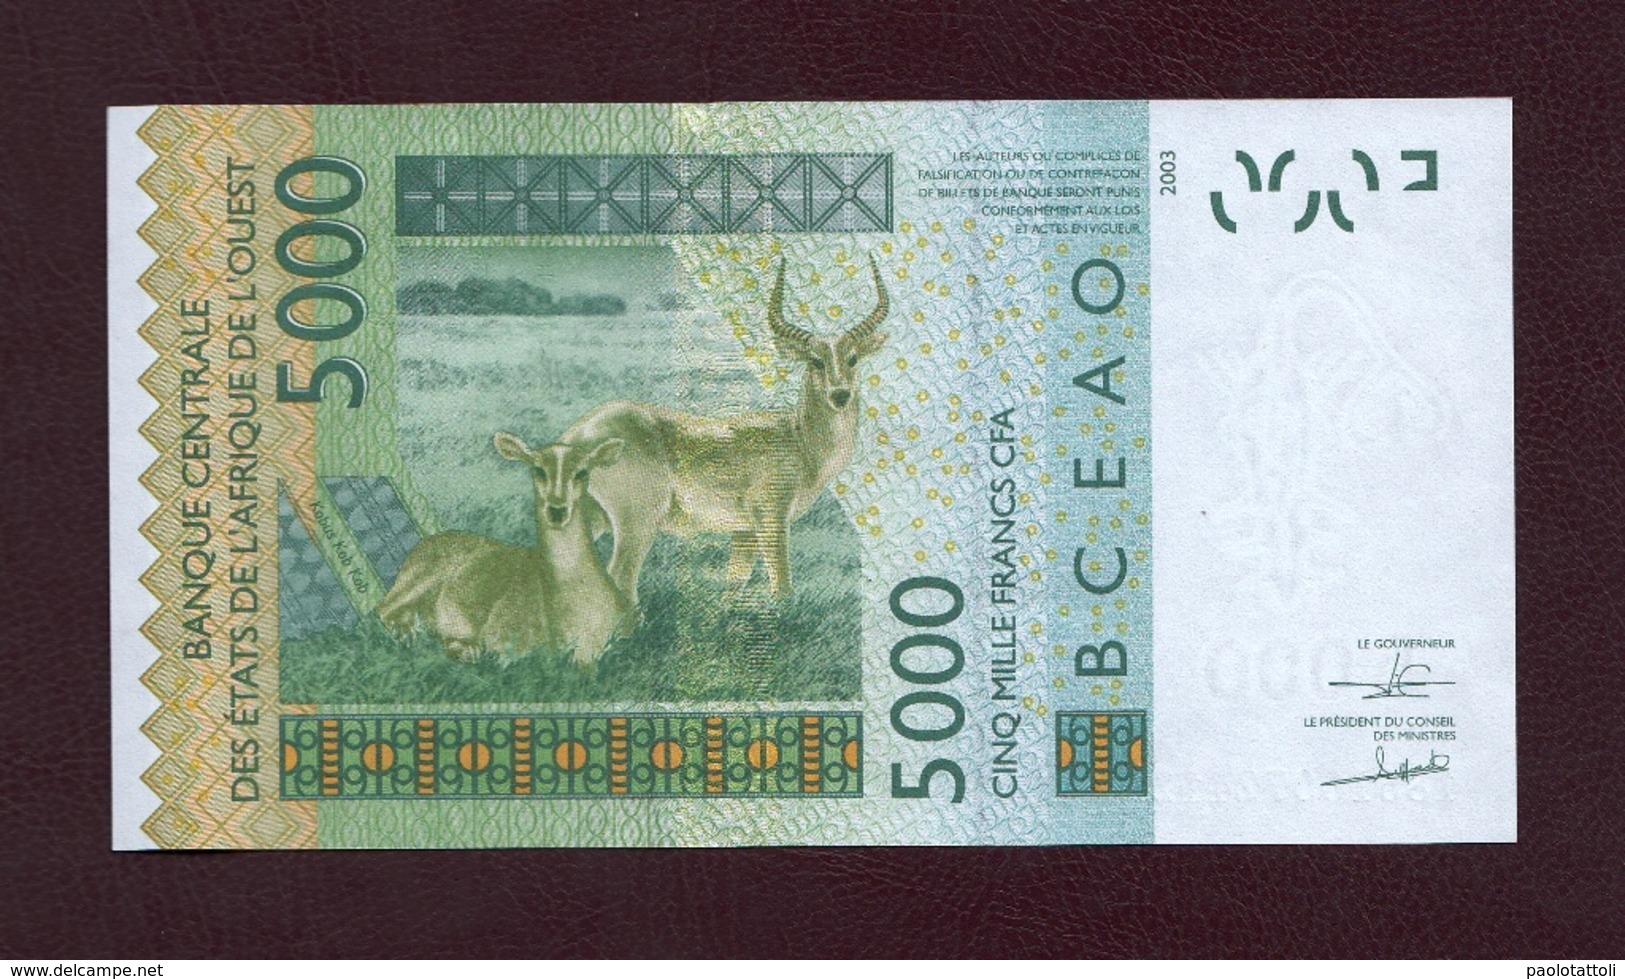 Senegal, 2003. Banque Centrale Des Etats De L'Afrique Del' Ouest. 5000 Francs CFA. - Sénégal